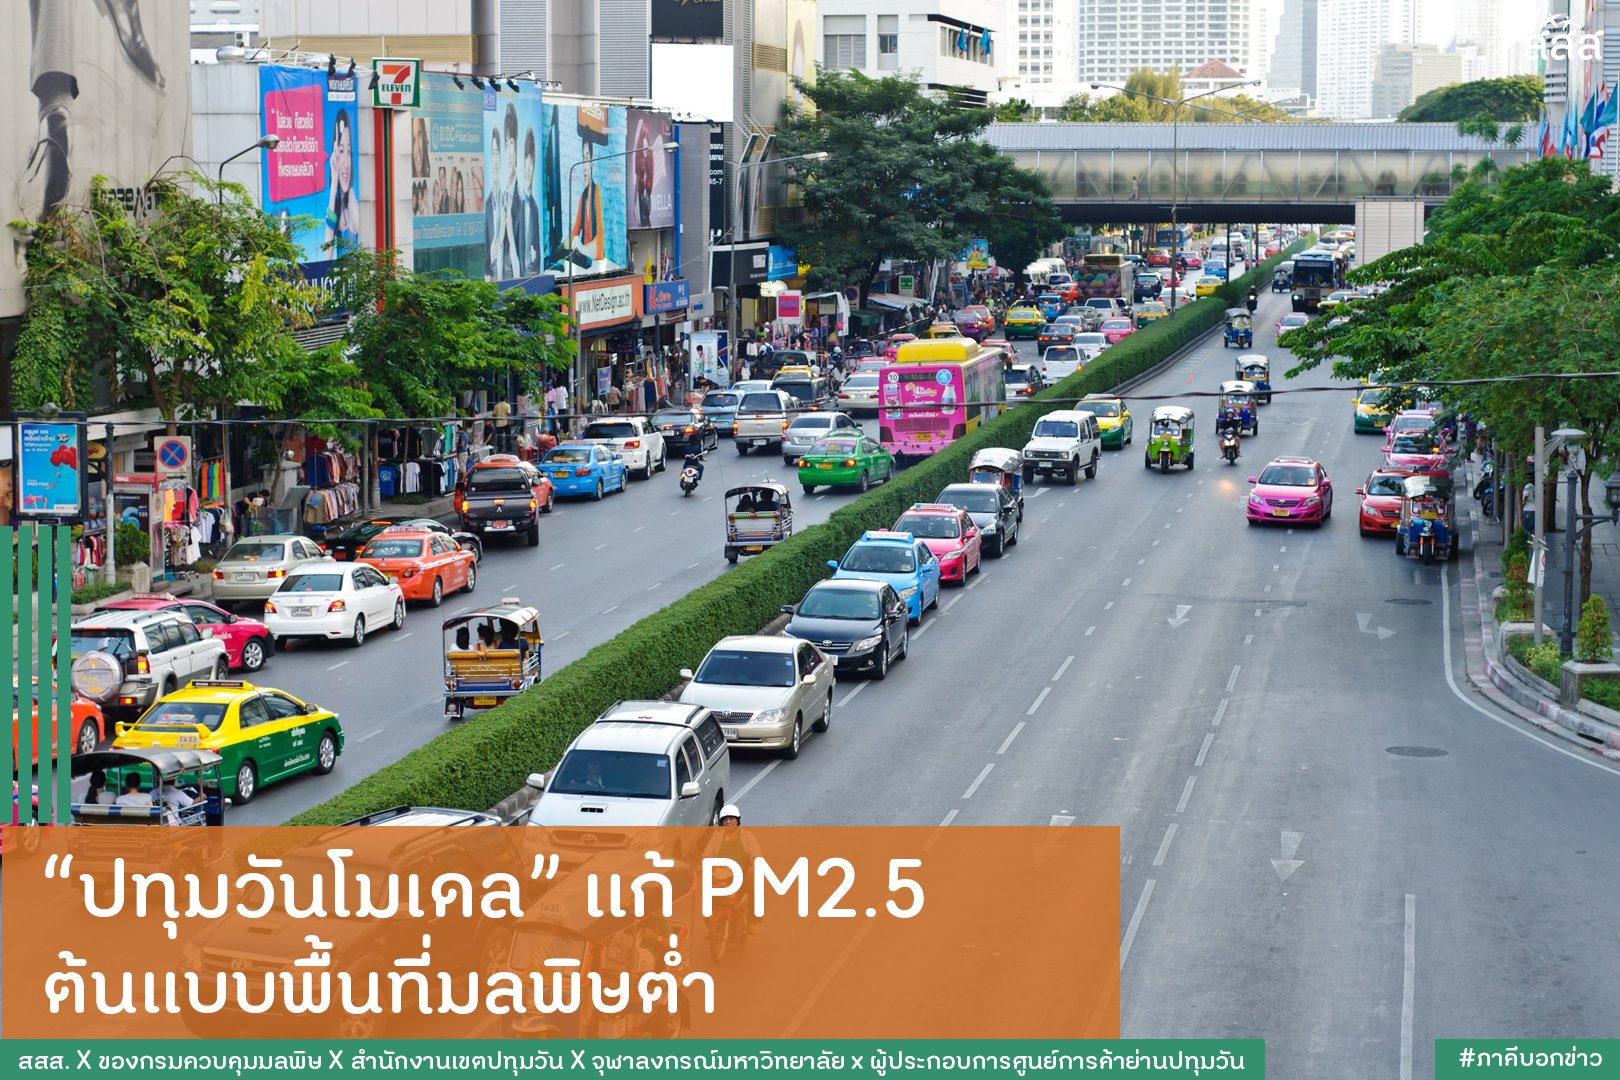 ปทุมวันโมเดล แก้ PM2.5  ต้นแบบพื้นที่มลพิษต่ำ thaihealth